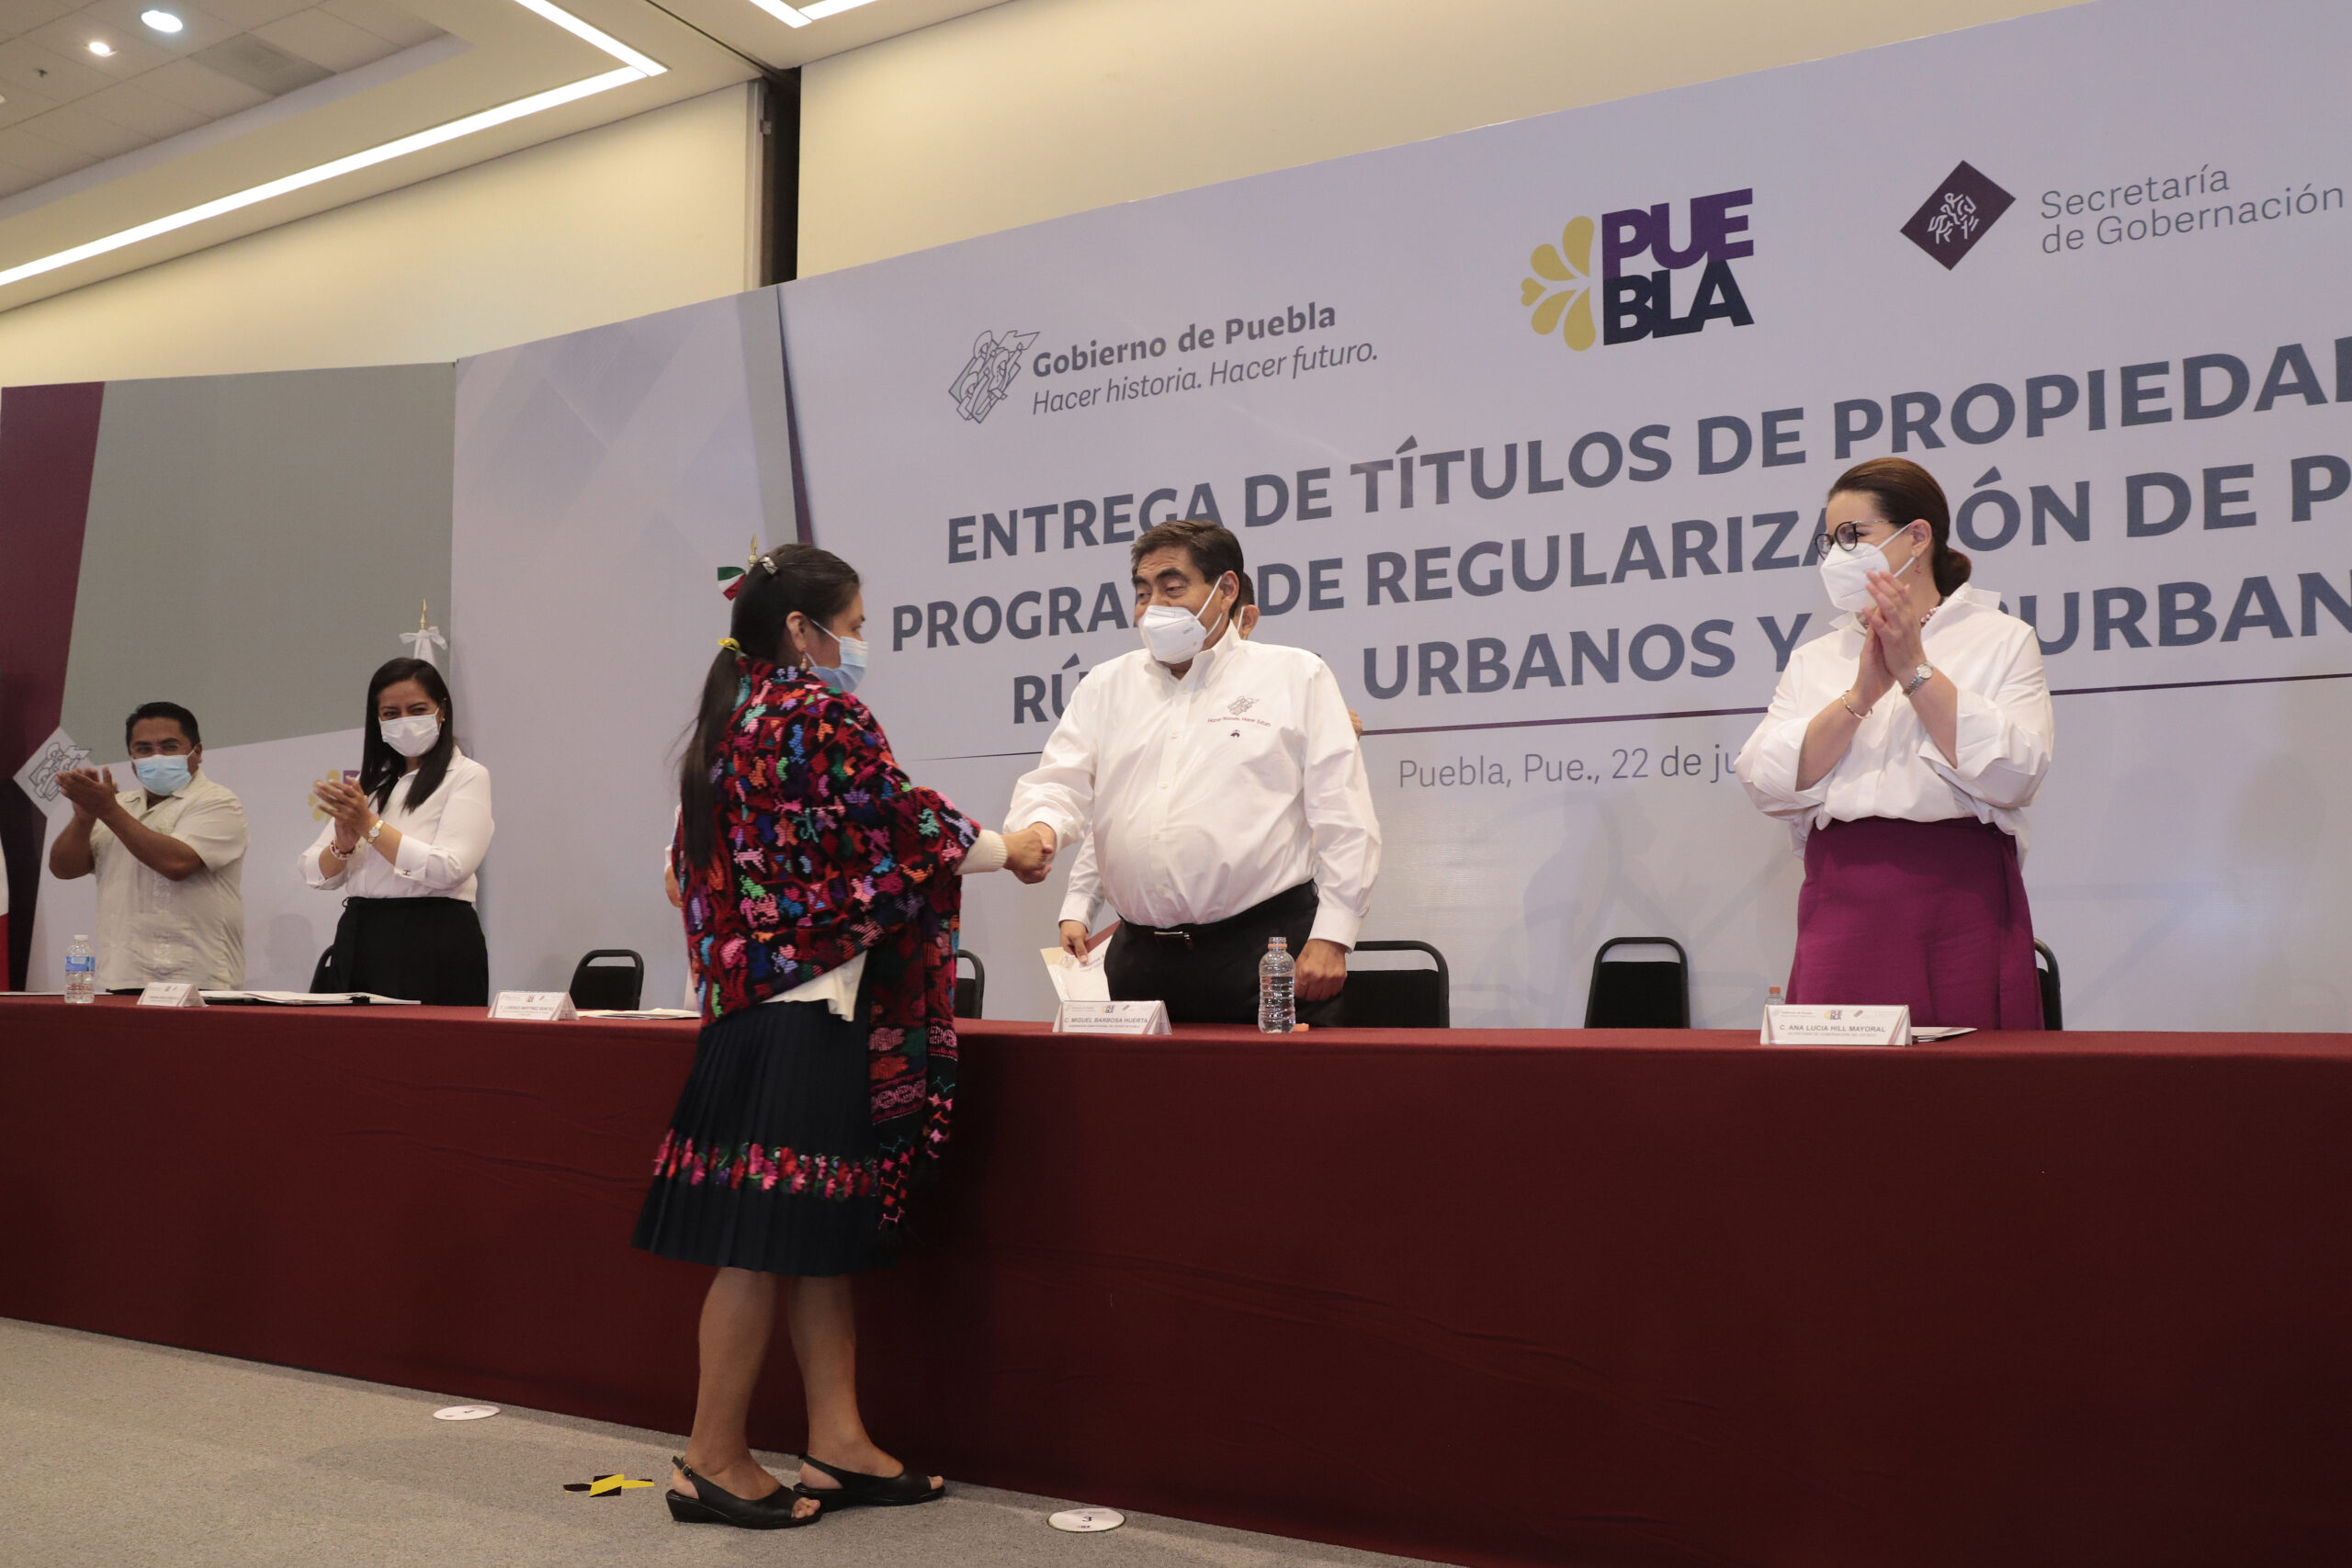 Con programa de regularización, gobierno de Puebla entregará 100 mil títulos de propiedad: Miguel Barbosa